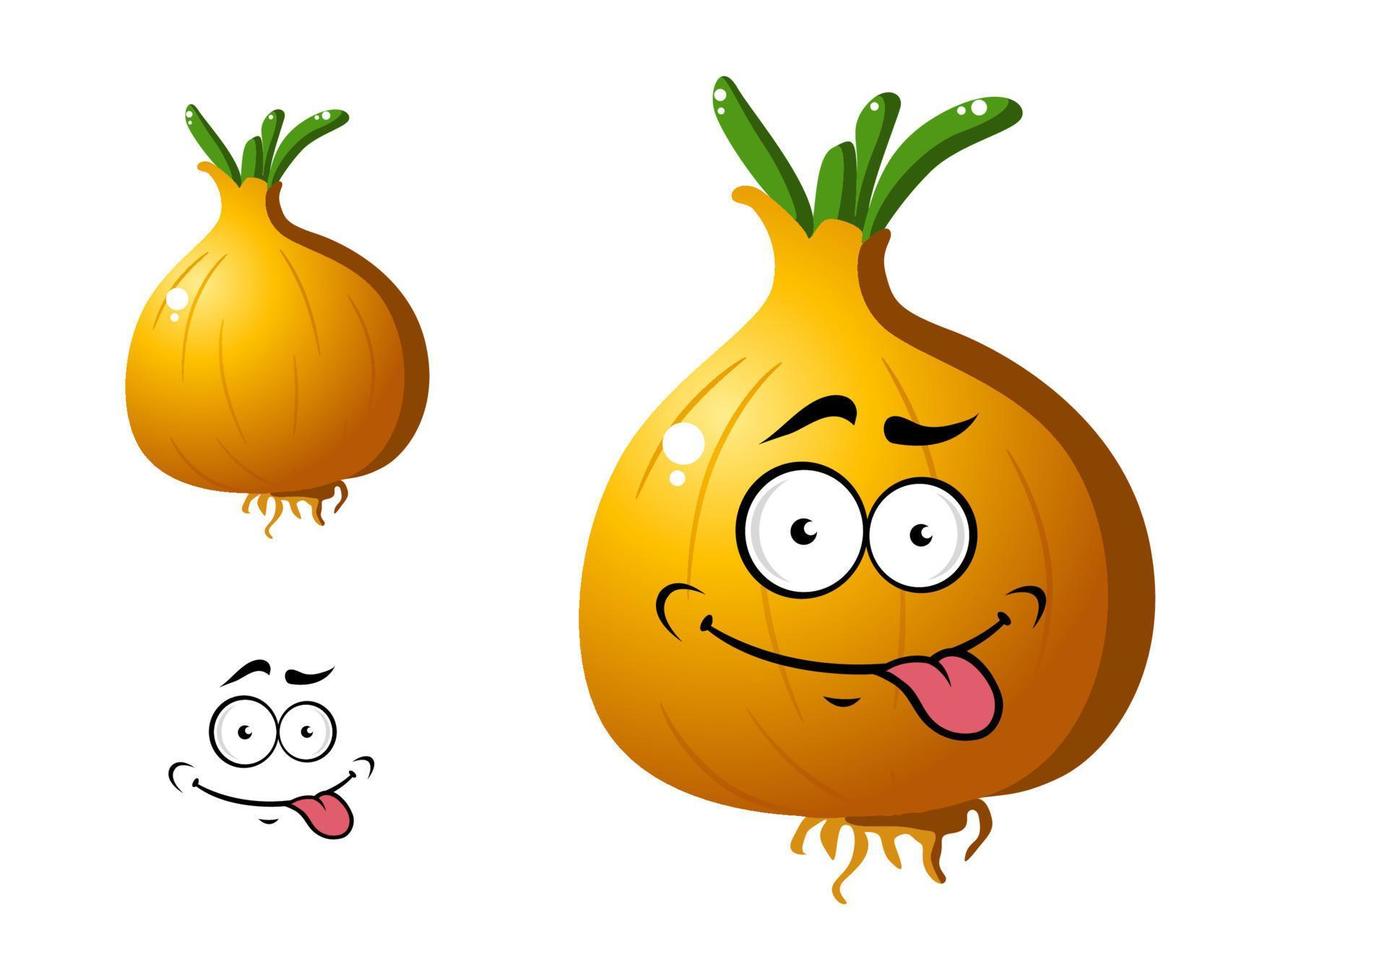 vegetal de cebolla dorada de dibujos animados vector